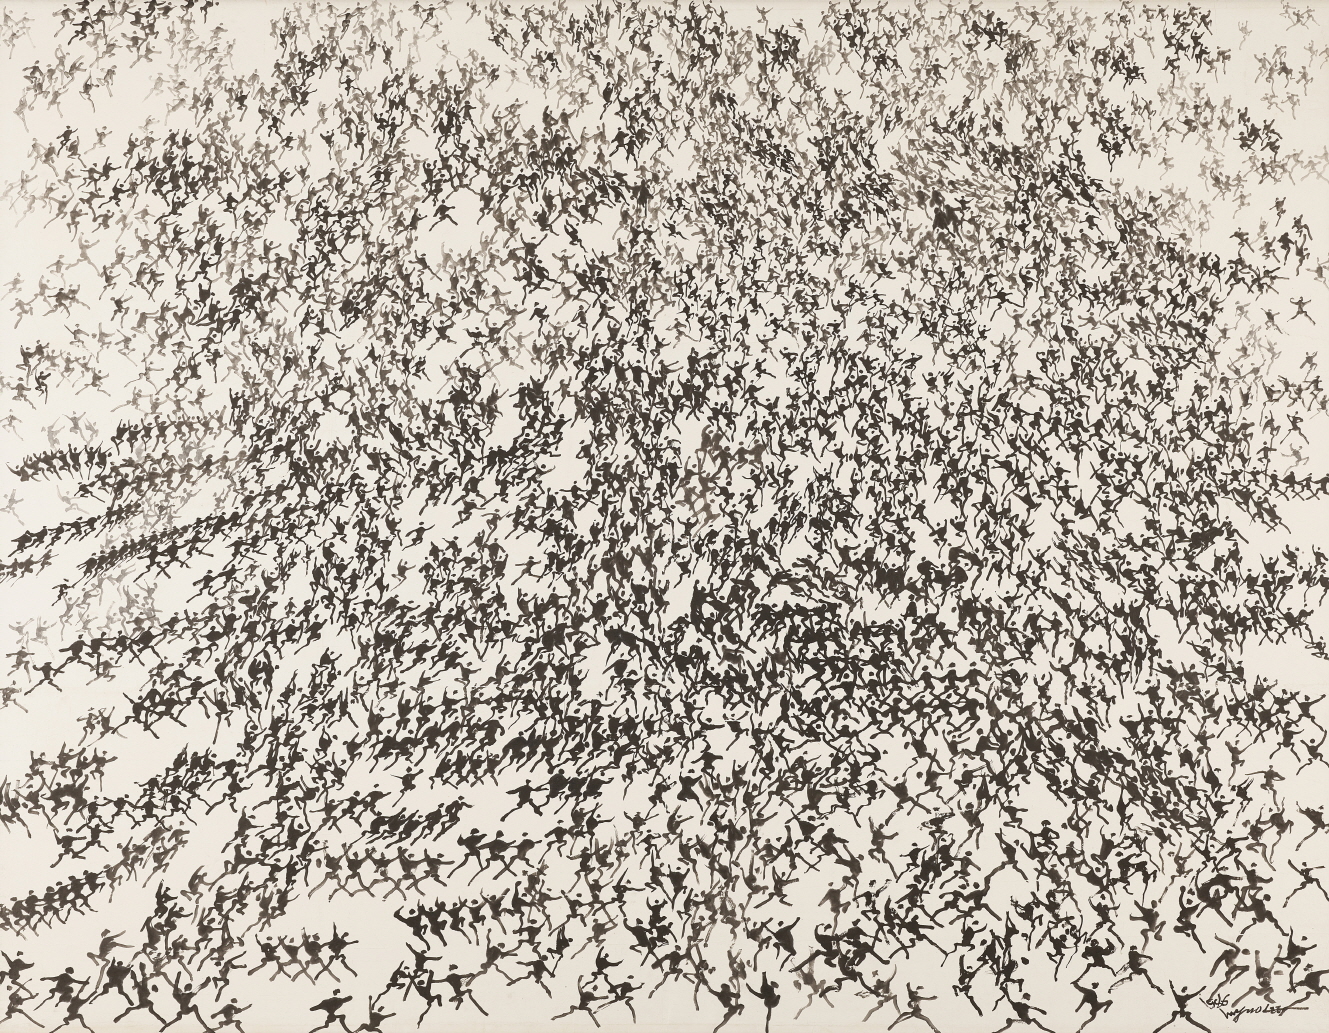  이응노, 군상, 1986, 종이에 수묵, 211x270cm, 국립현대미술관 소장